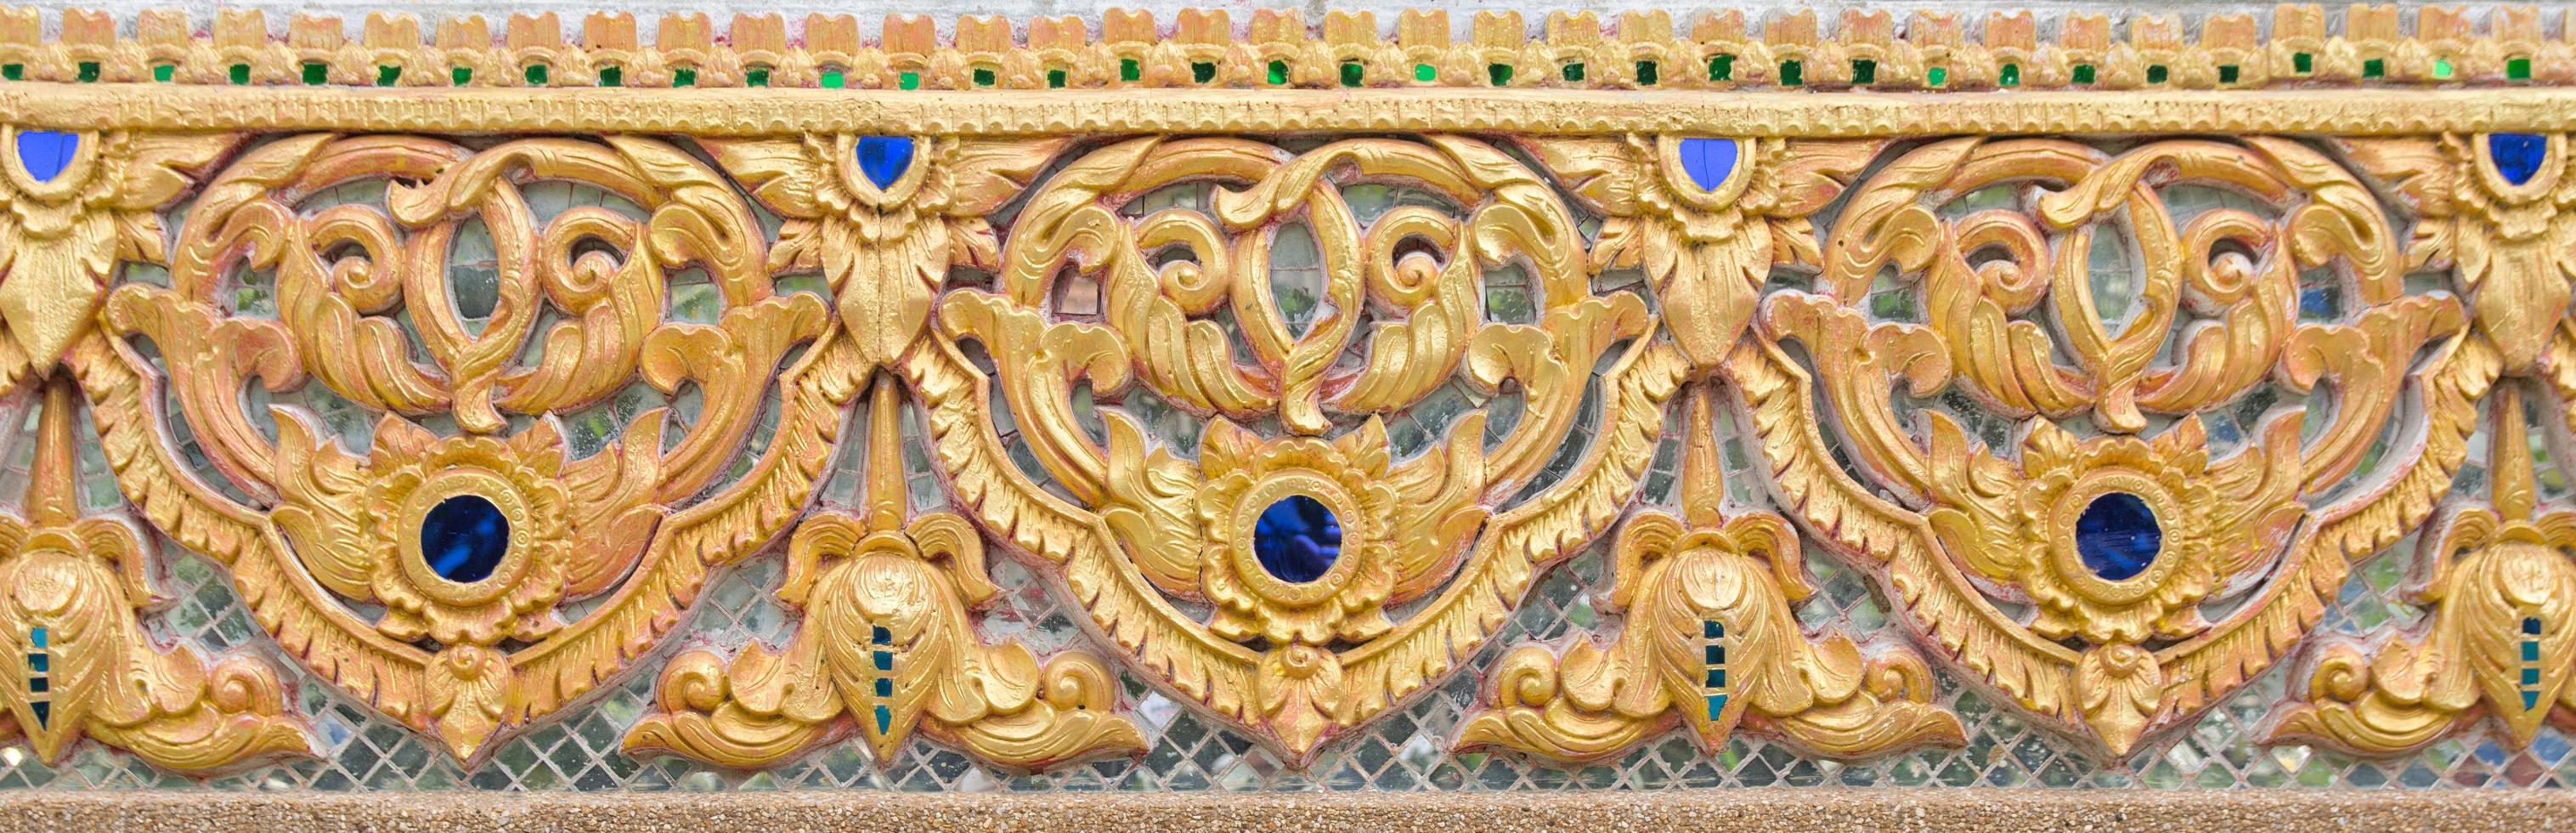 modello di oro fiore lavorato su stucco design di nativo parete, tailandese stile nel tempio foto